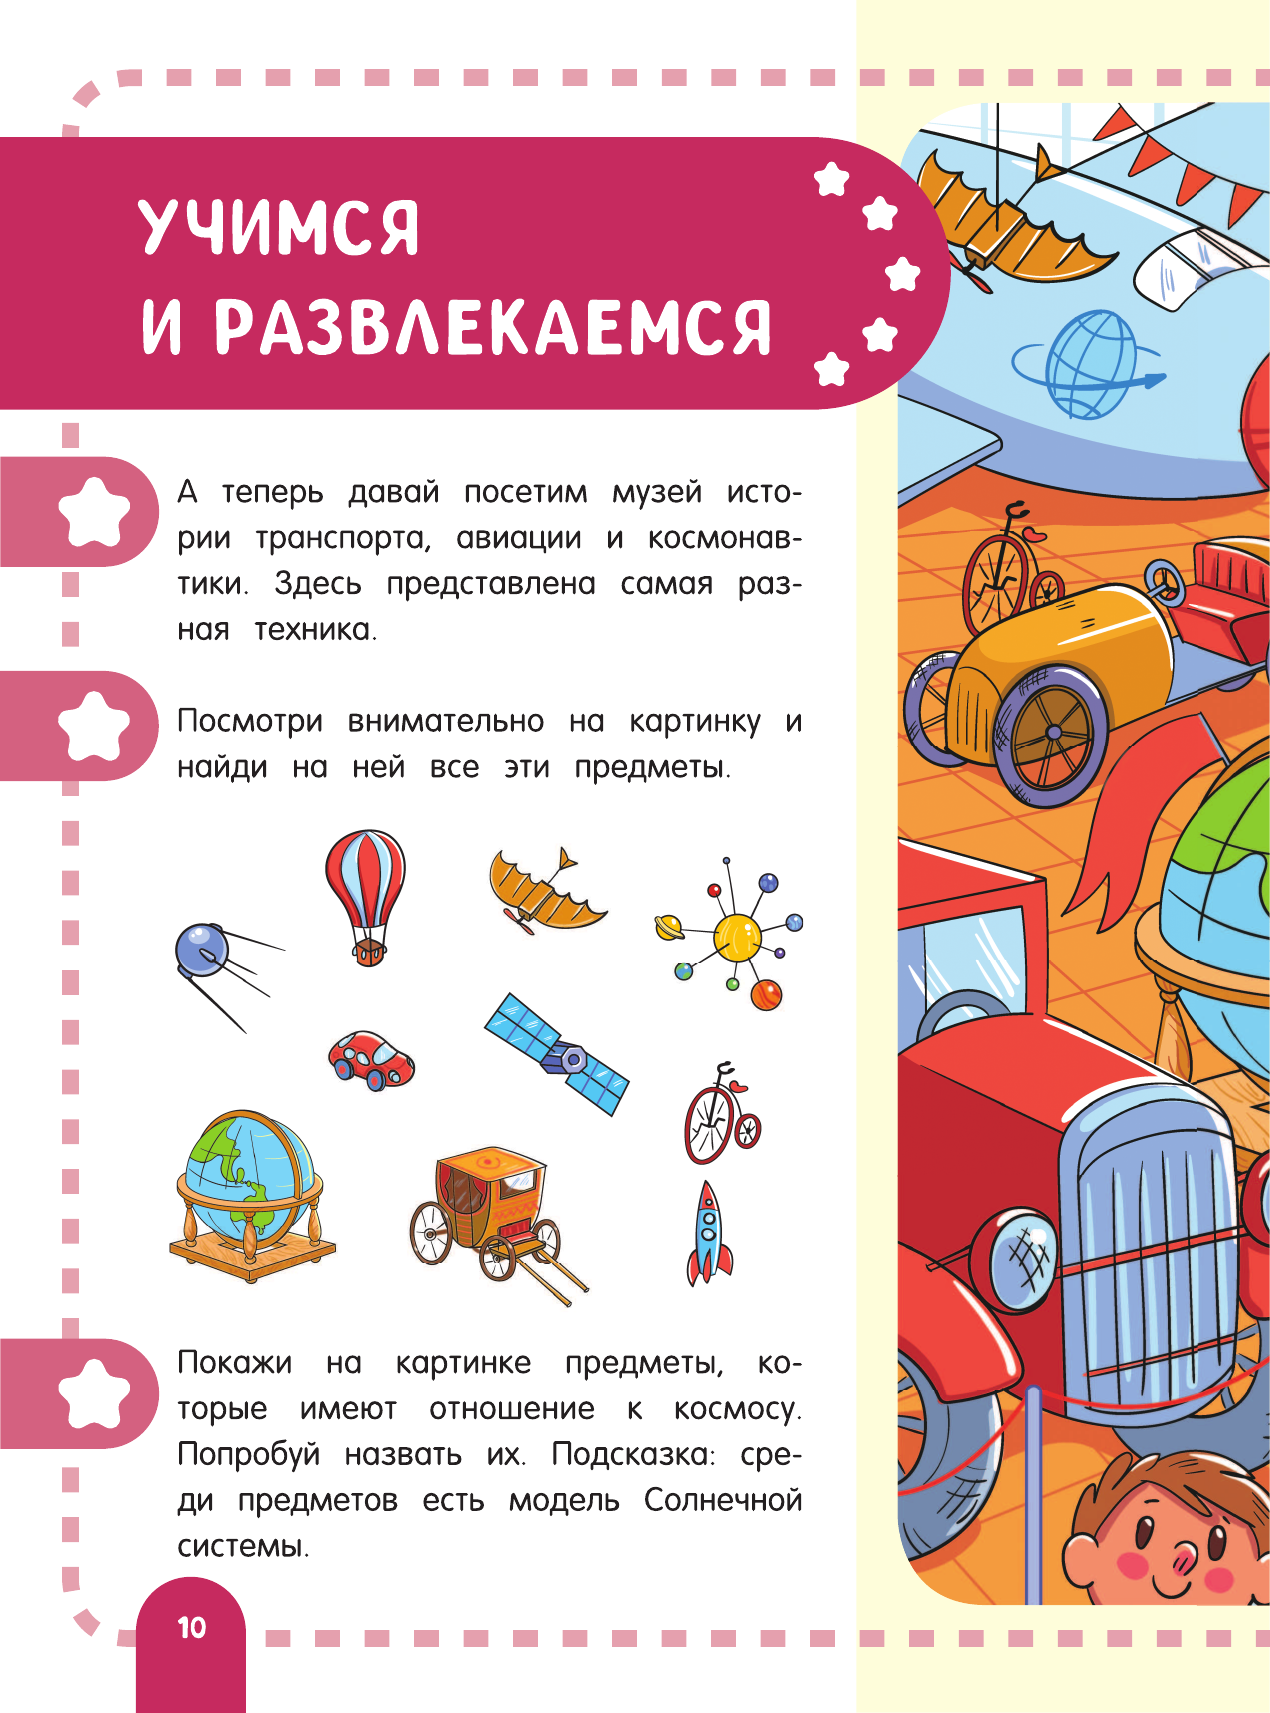 Главная энциклопедия ребёнка о космосе - фото №12